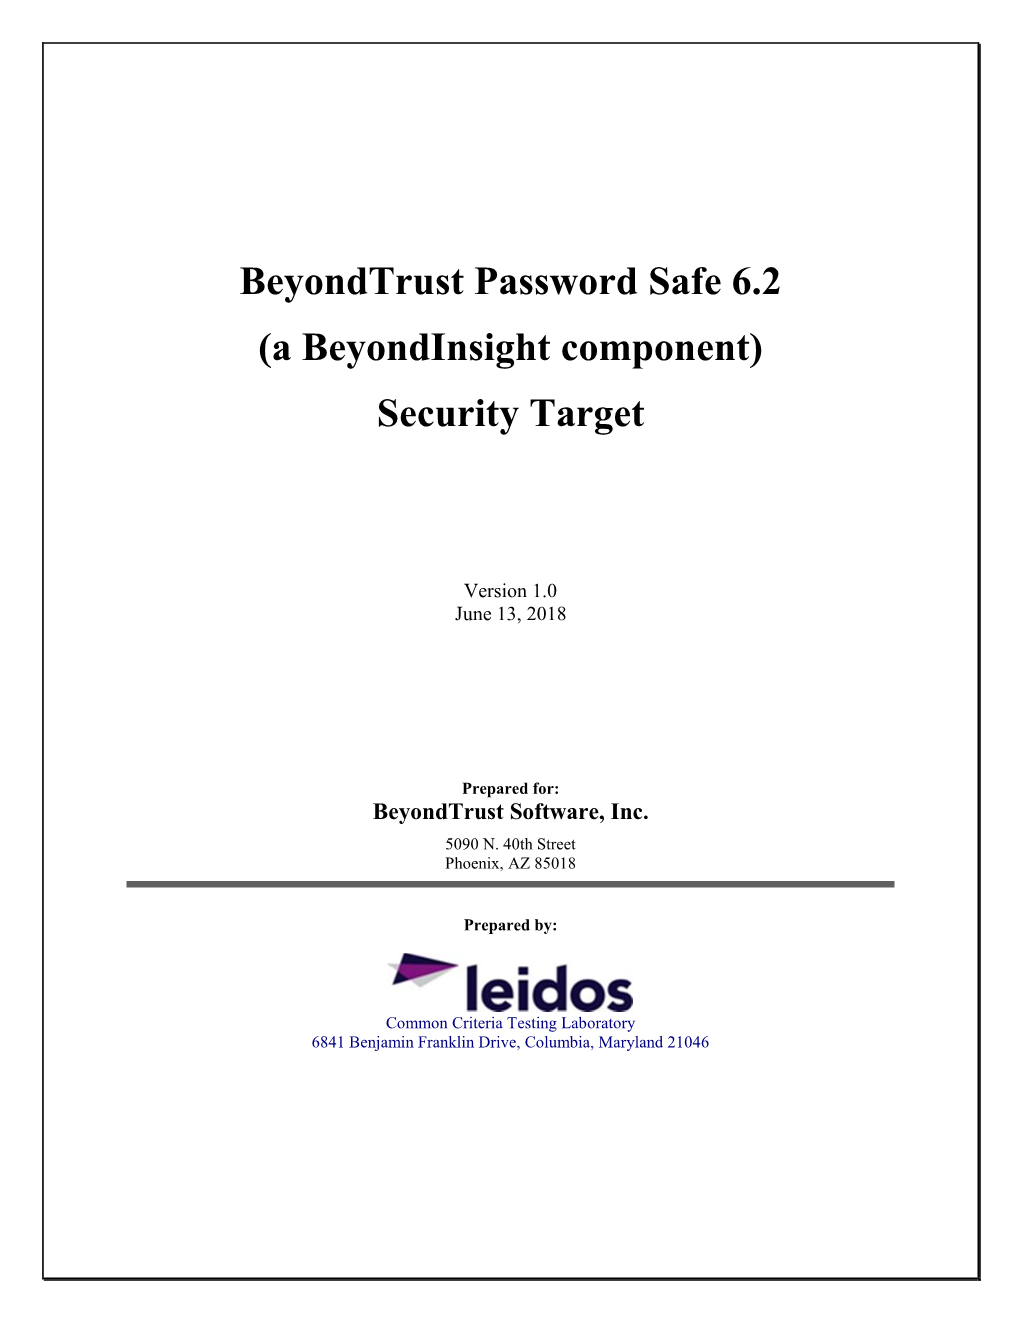 Beyondtrust Password Safe 6.2 (A Beyondinsight Component) Security Target